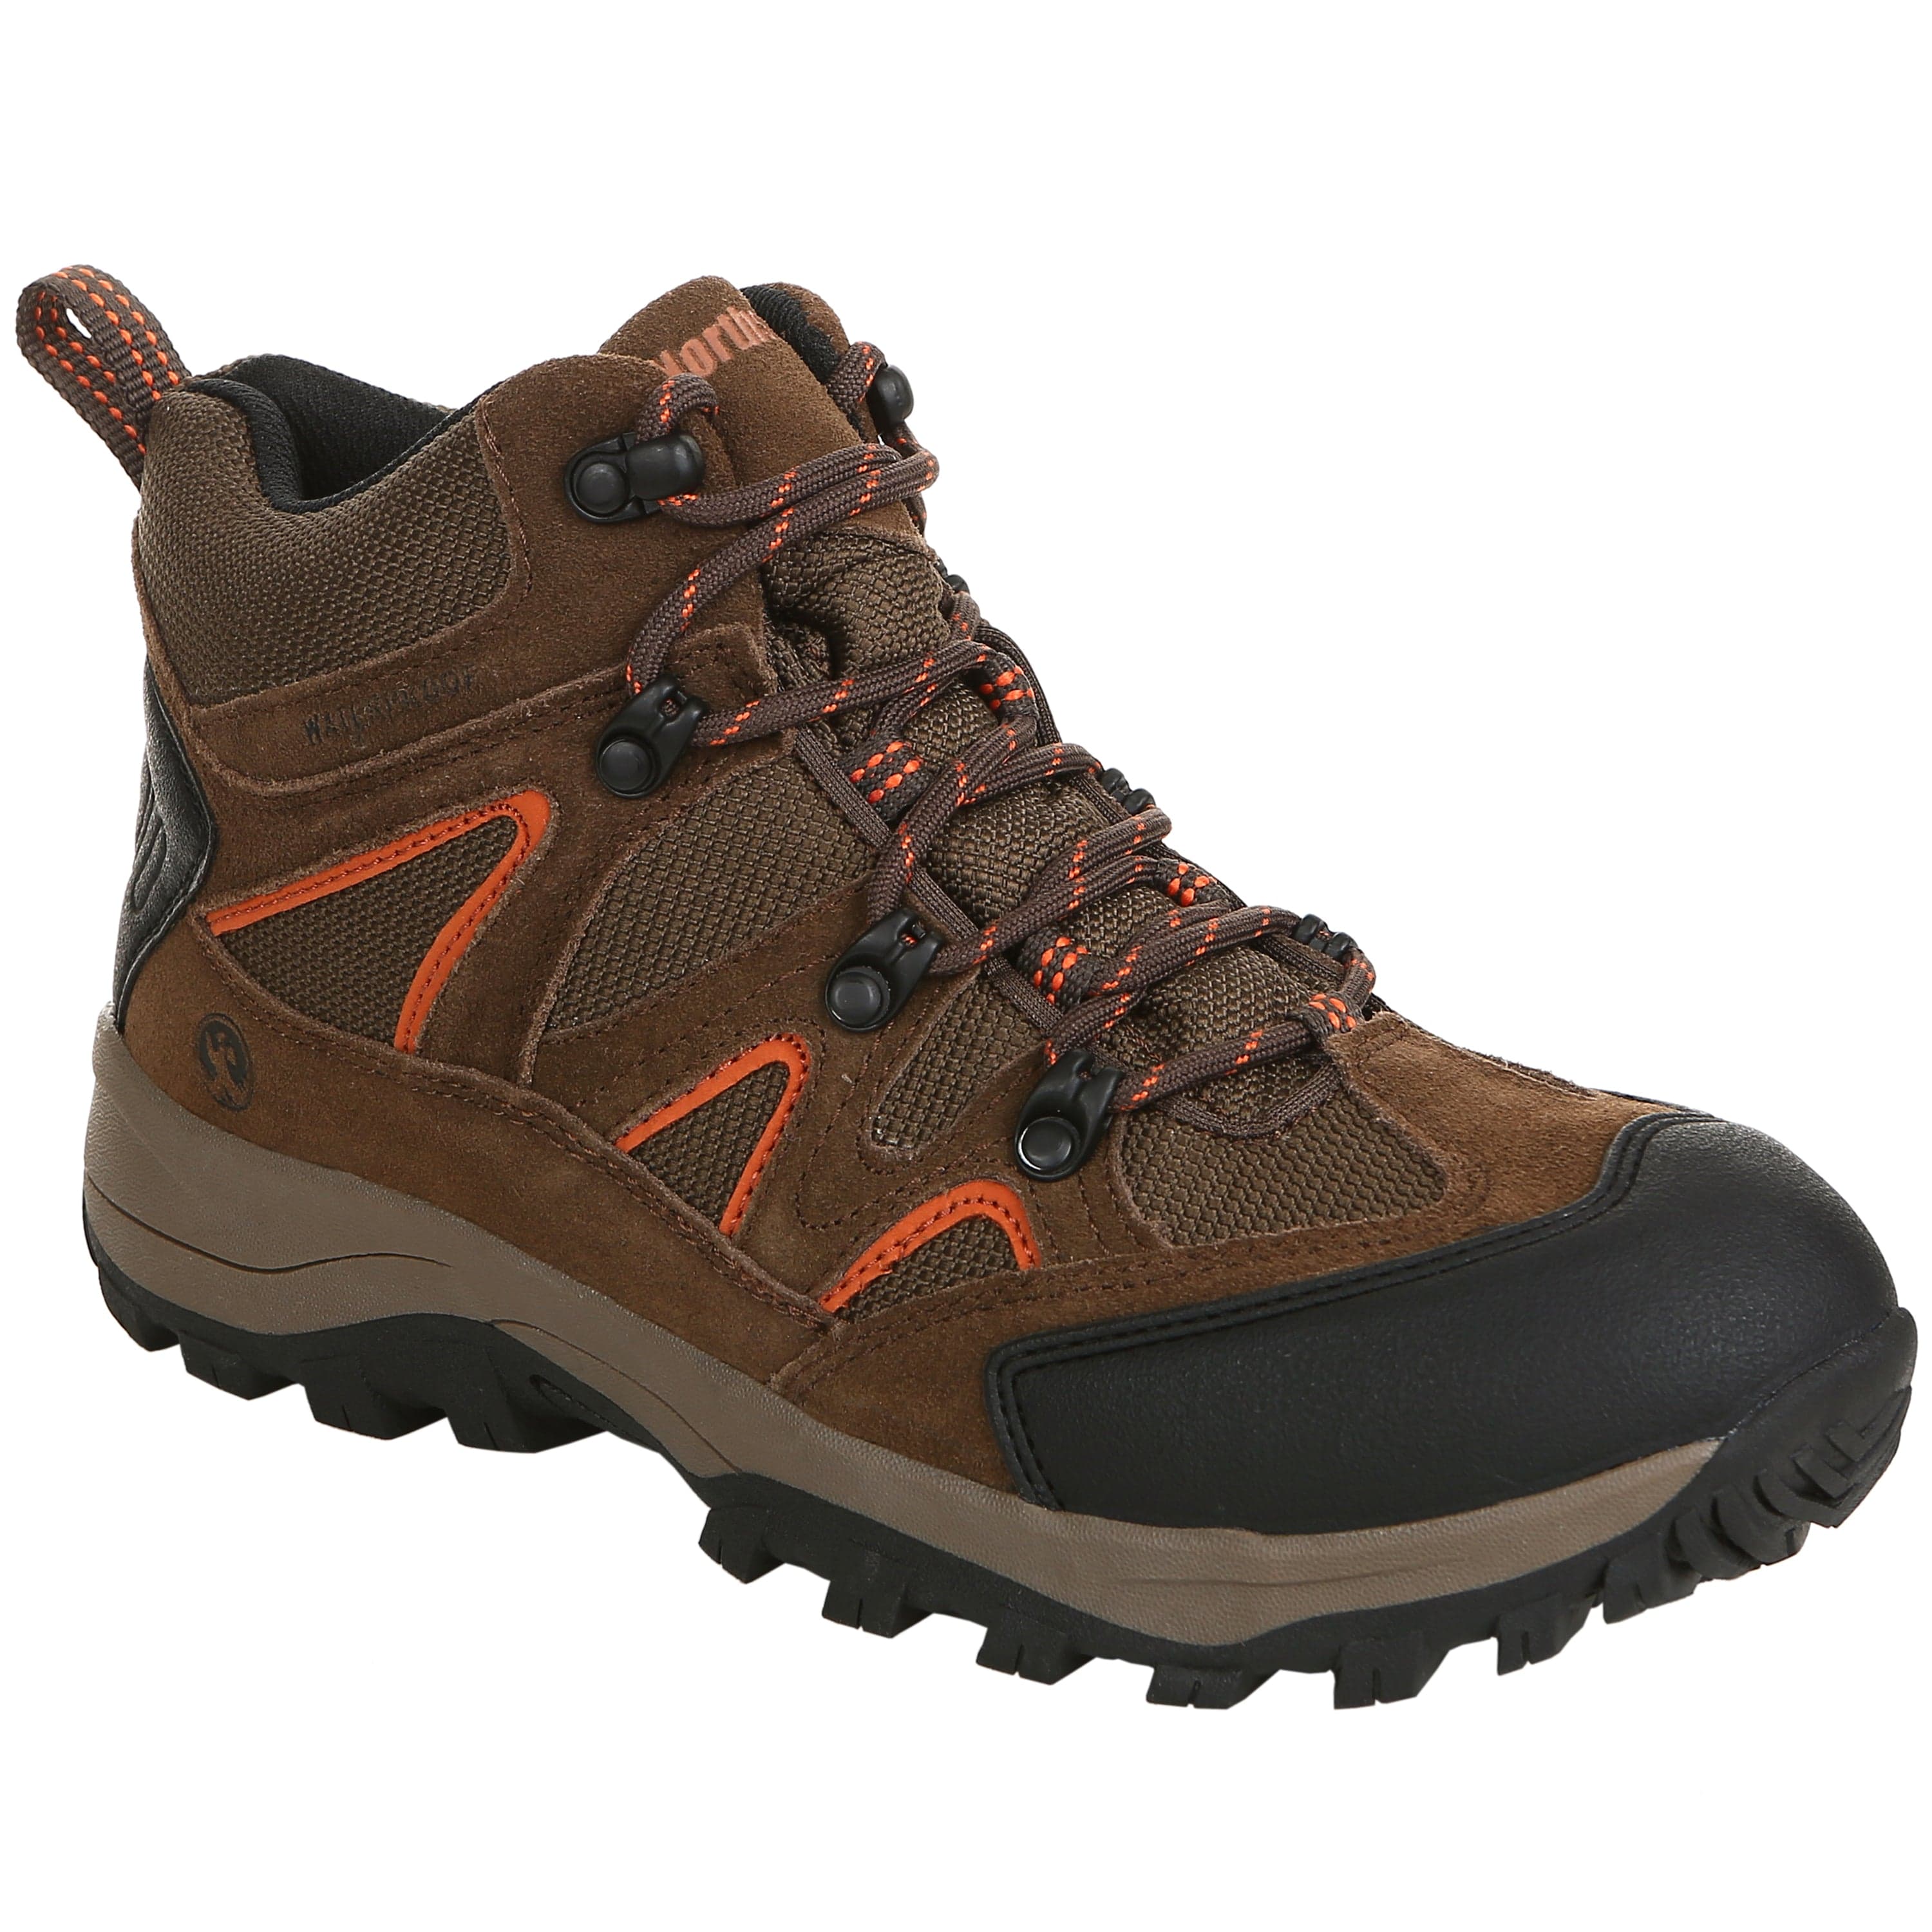 https://northsideusa.com/cdn/shop/files/waterproof-hiking-boots.jpg?v=1696525195&width=3000